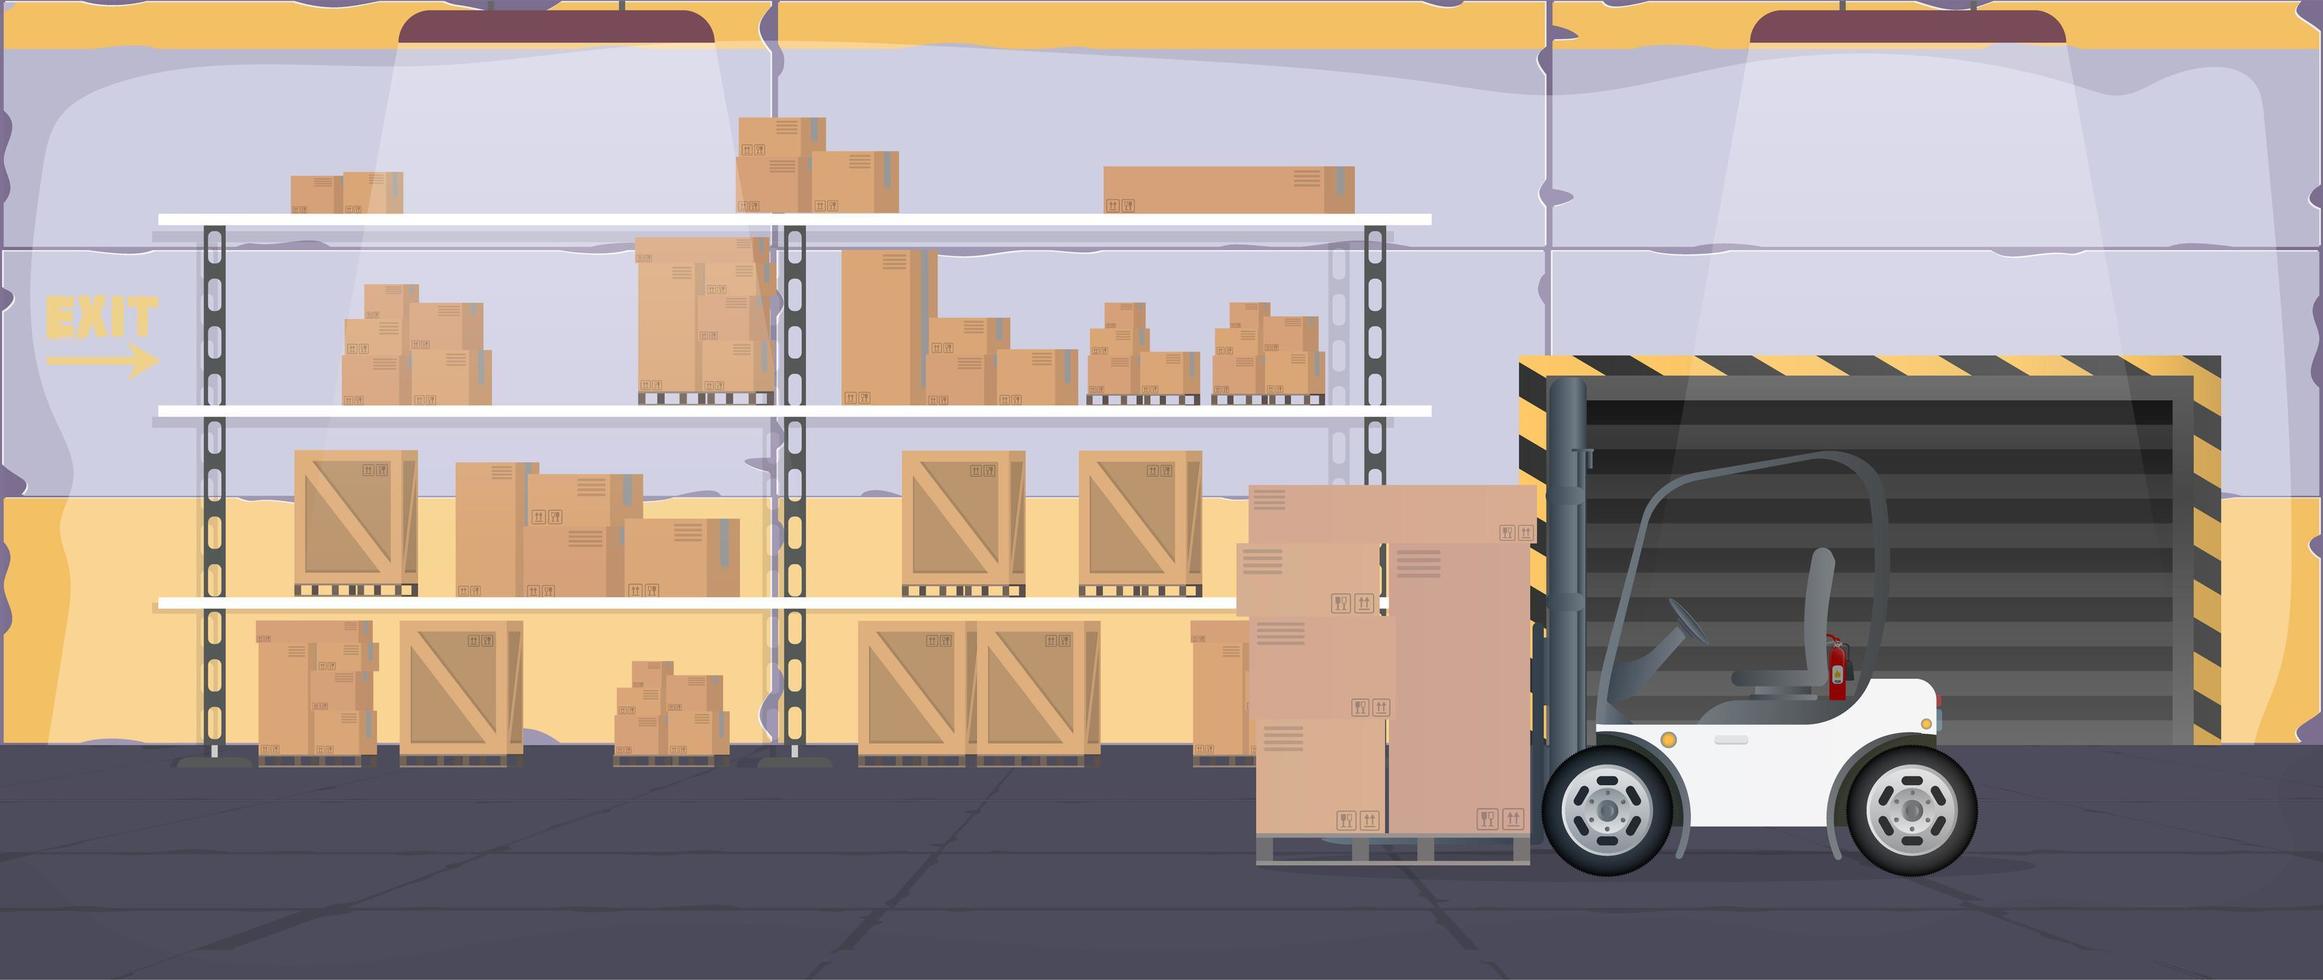 ampio magazzino con cassetti. un carrello elevatore solleva un pallet con scatole. carrello elevatore industriale. scaffale con cassetti e scatole. vettore. vettore